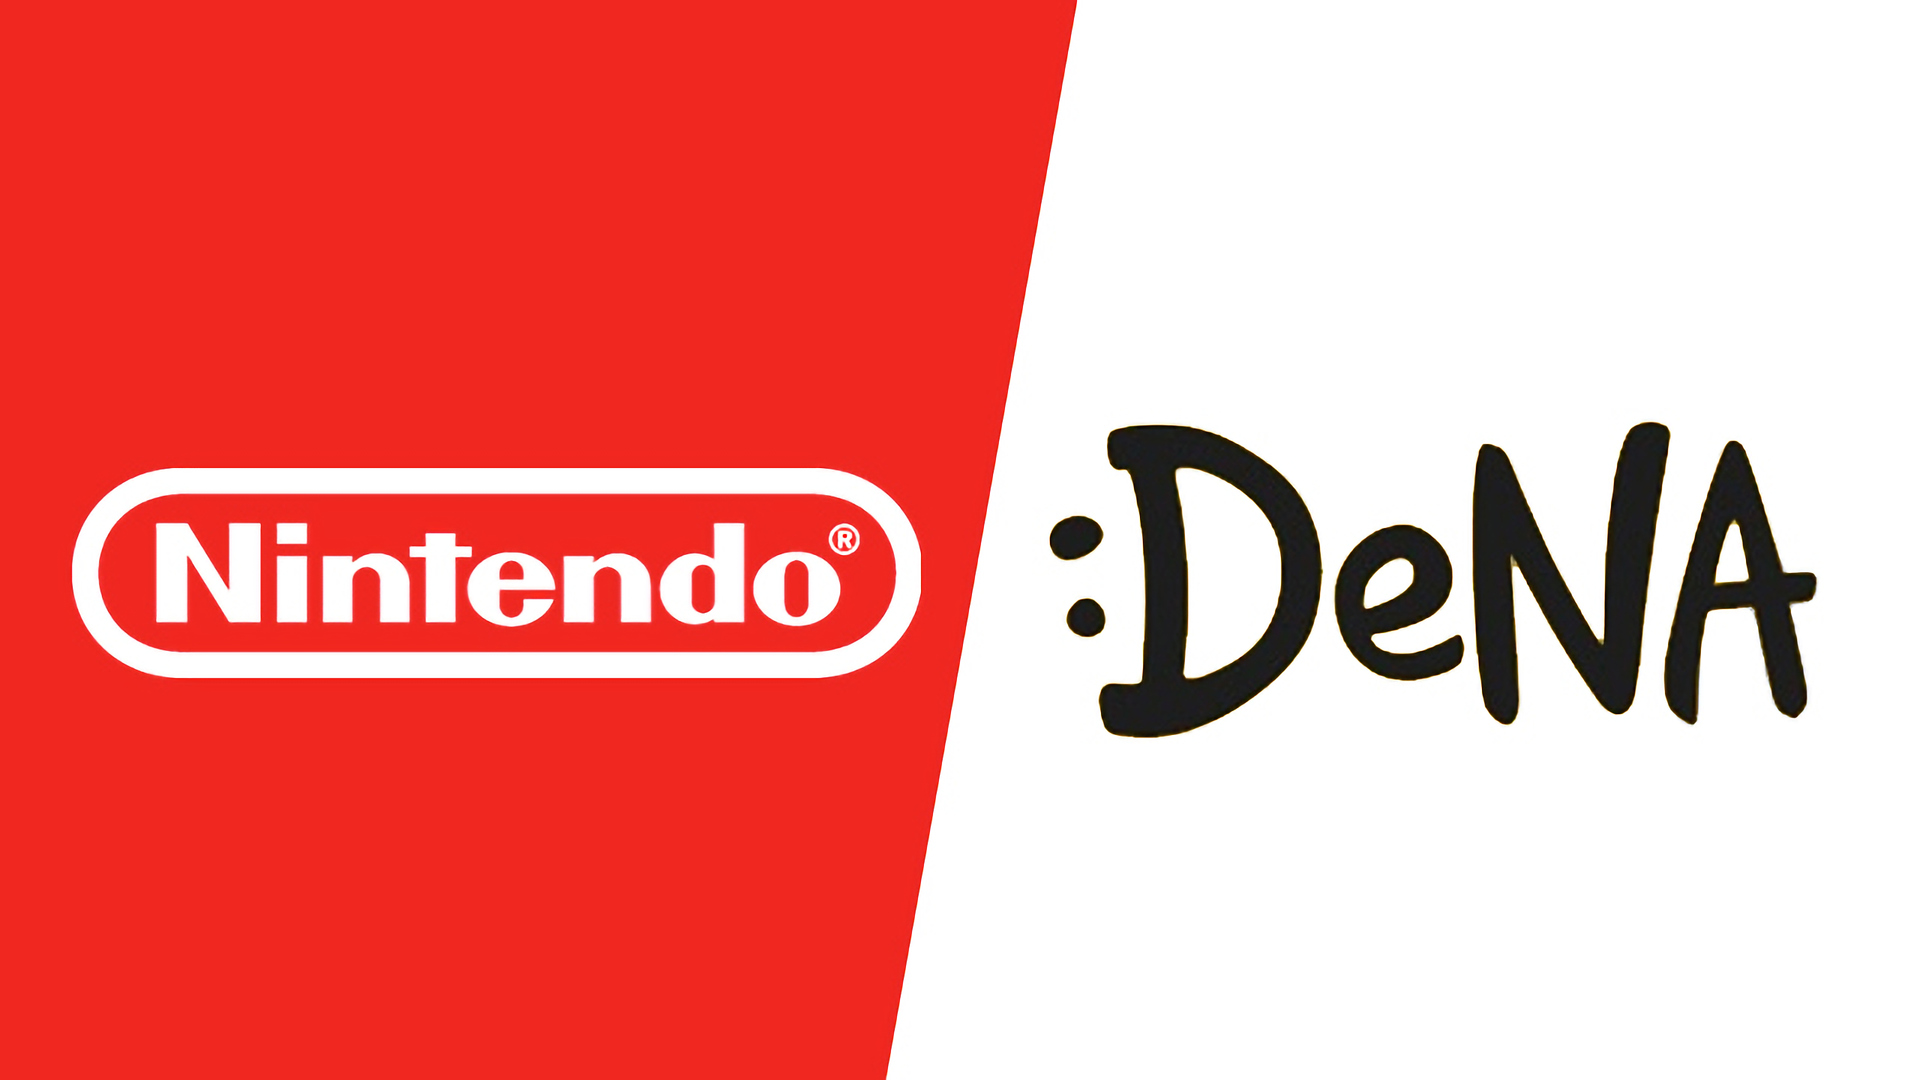 DeNA điều phối 100 nhân viên phục vụ cho những dự án với Nintendo - Tin Game